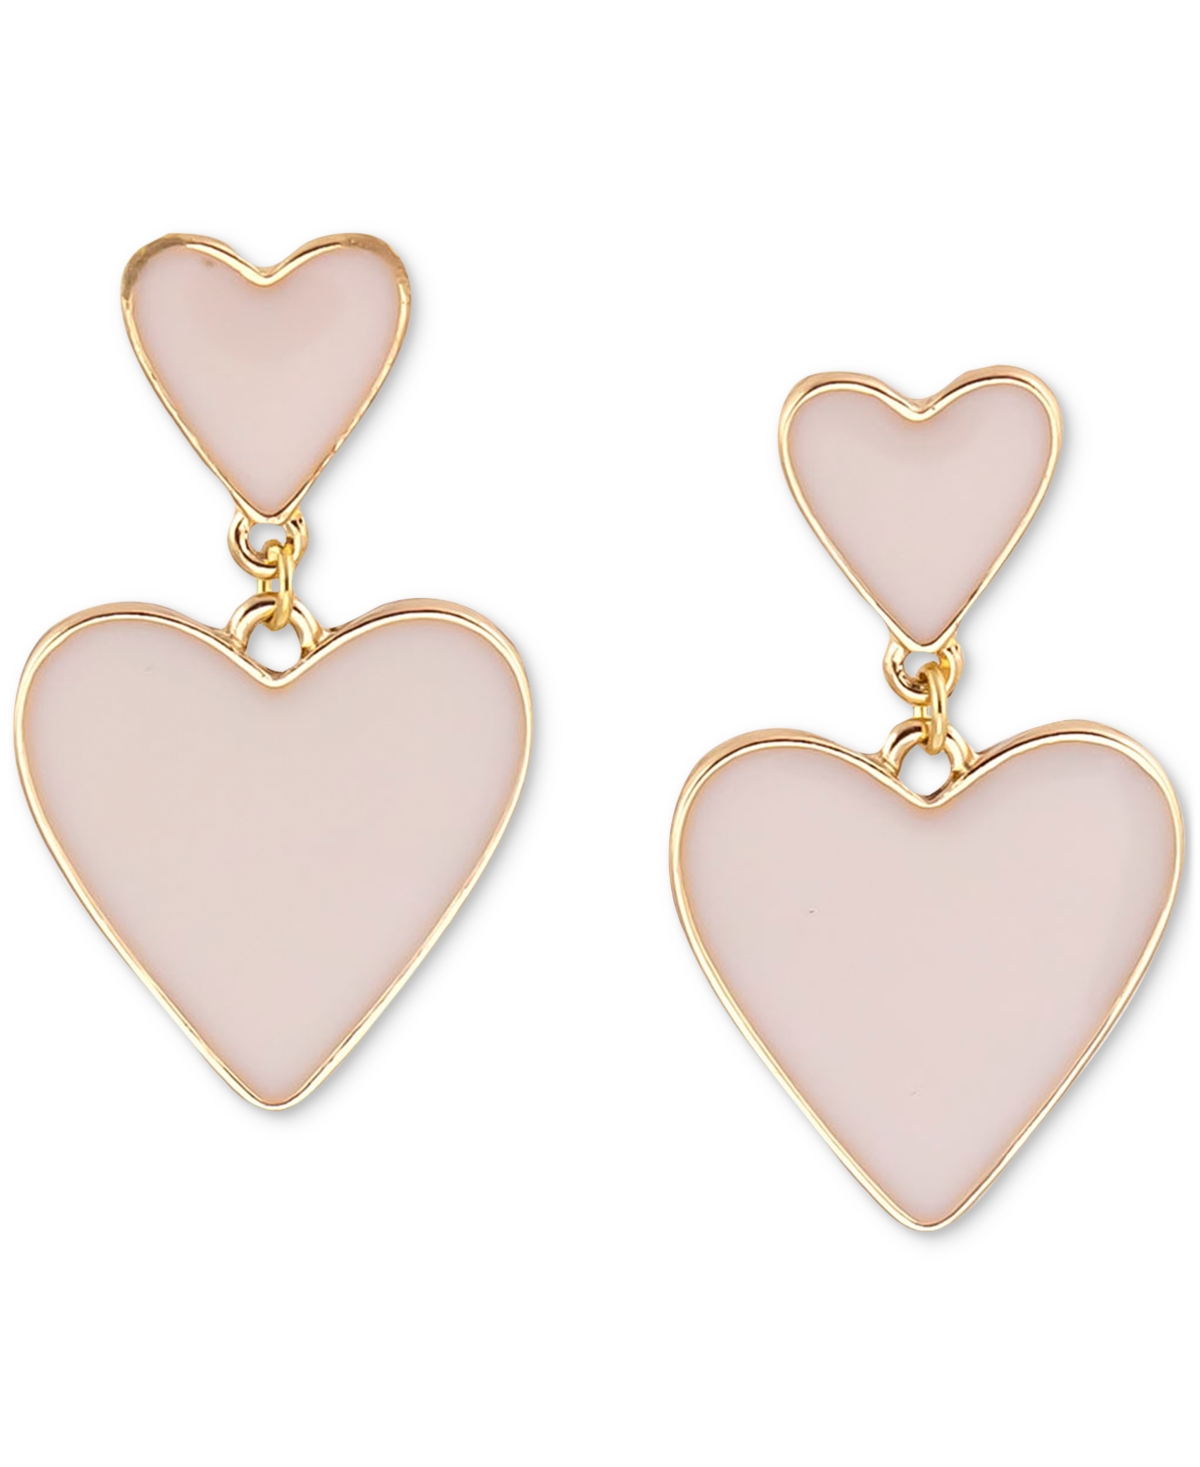 Gold-Tone Color Heart Double Drop Earrings - Beige